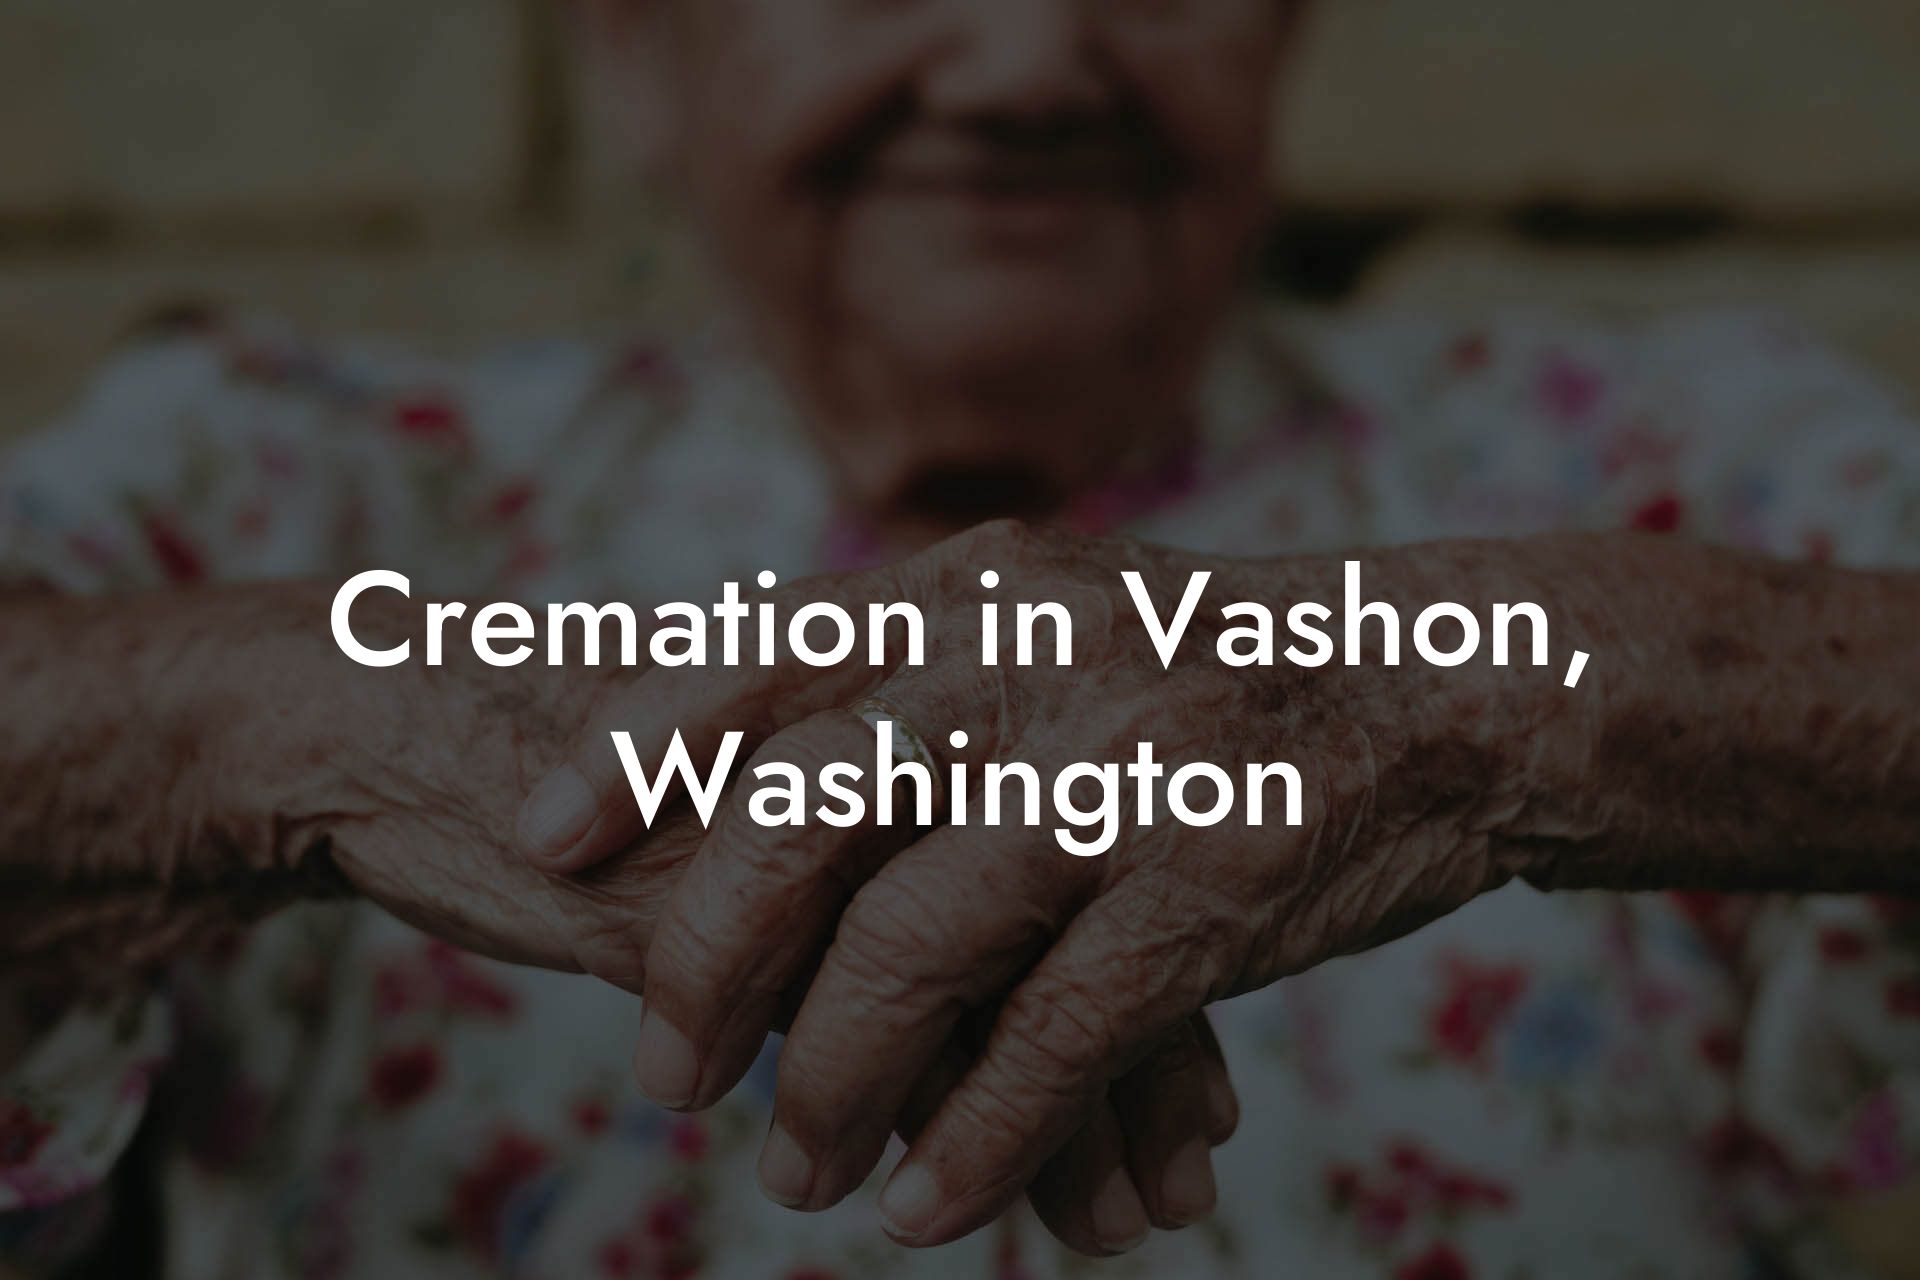 Cremation in Vashon, Washington